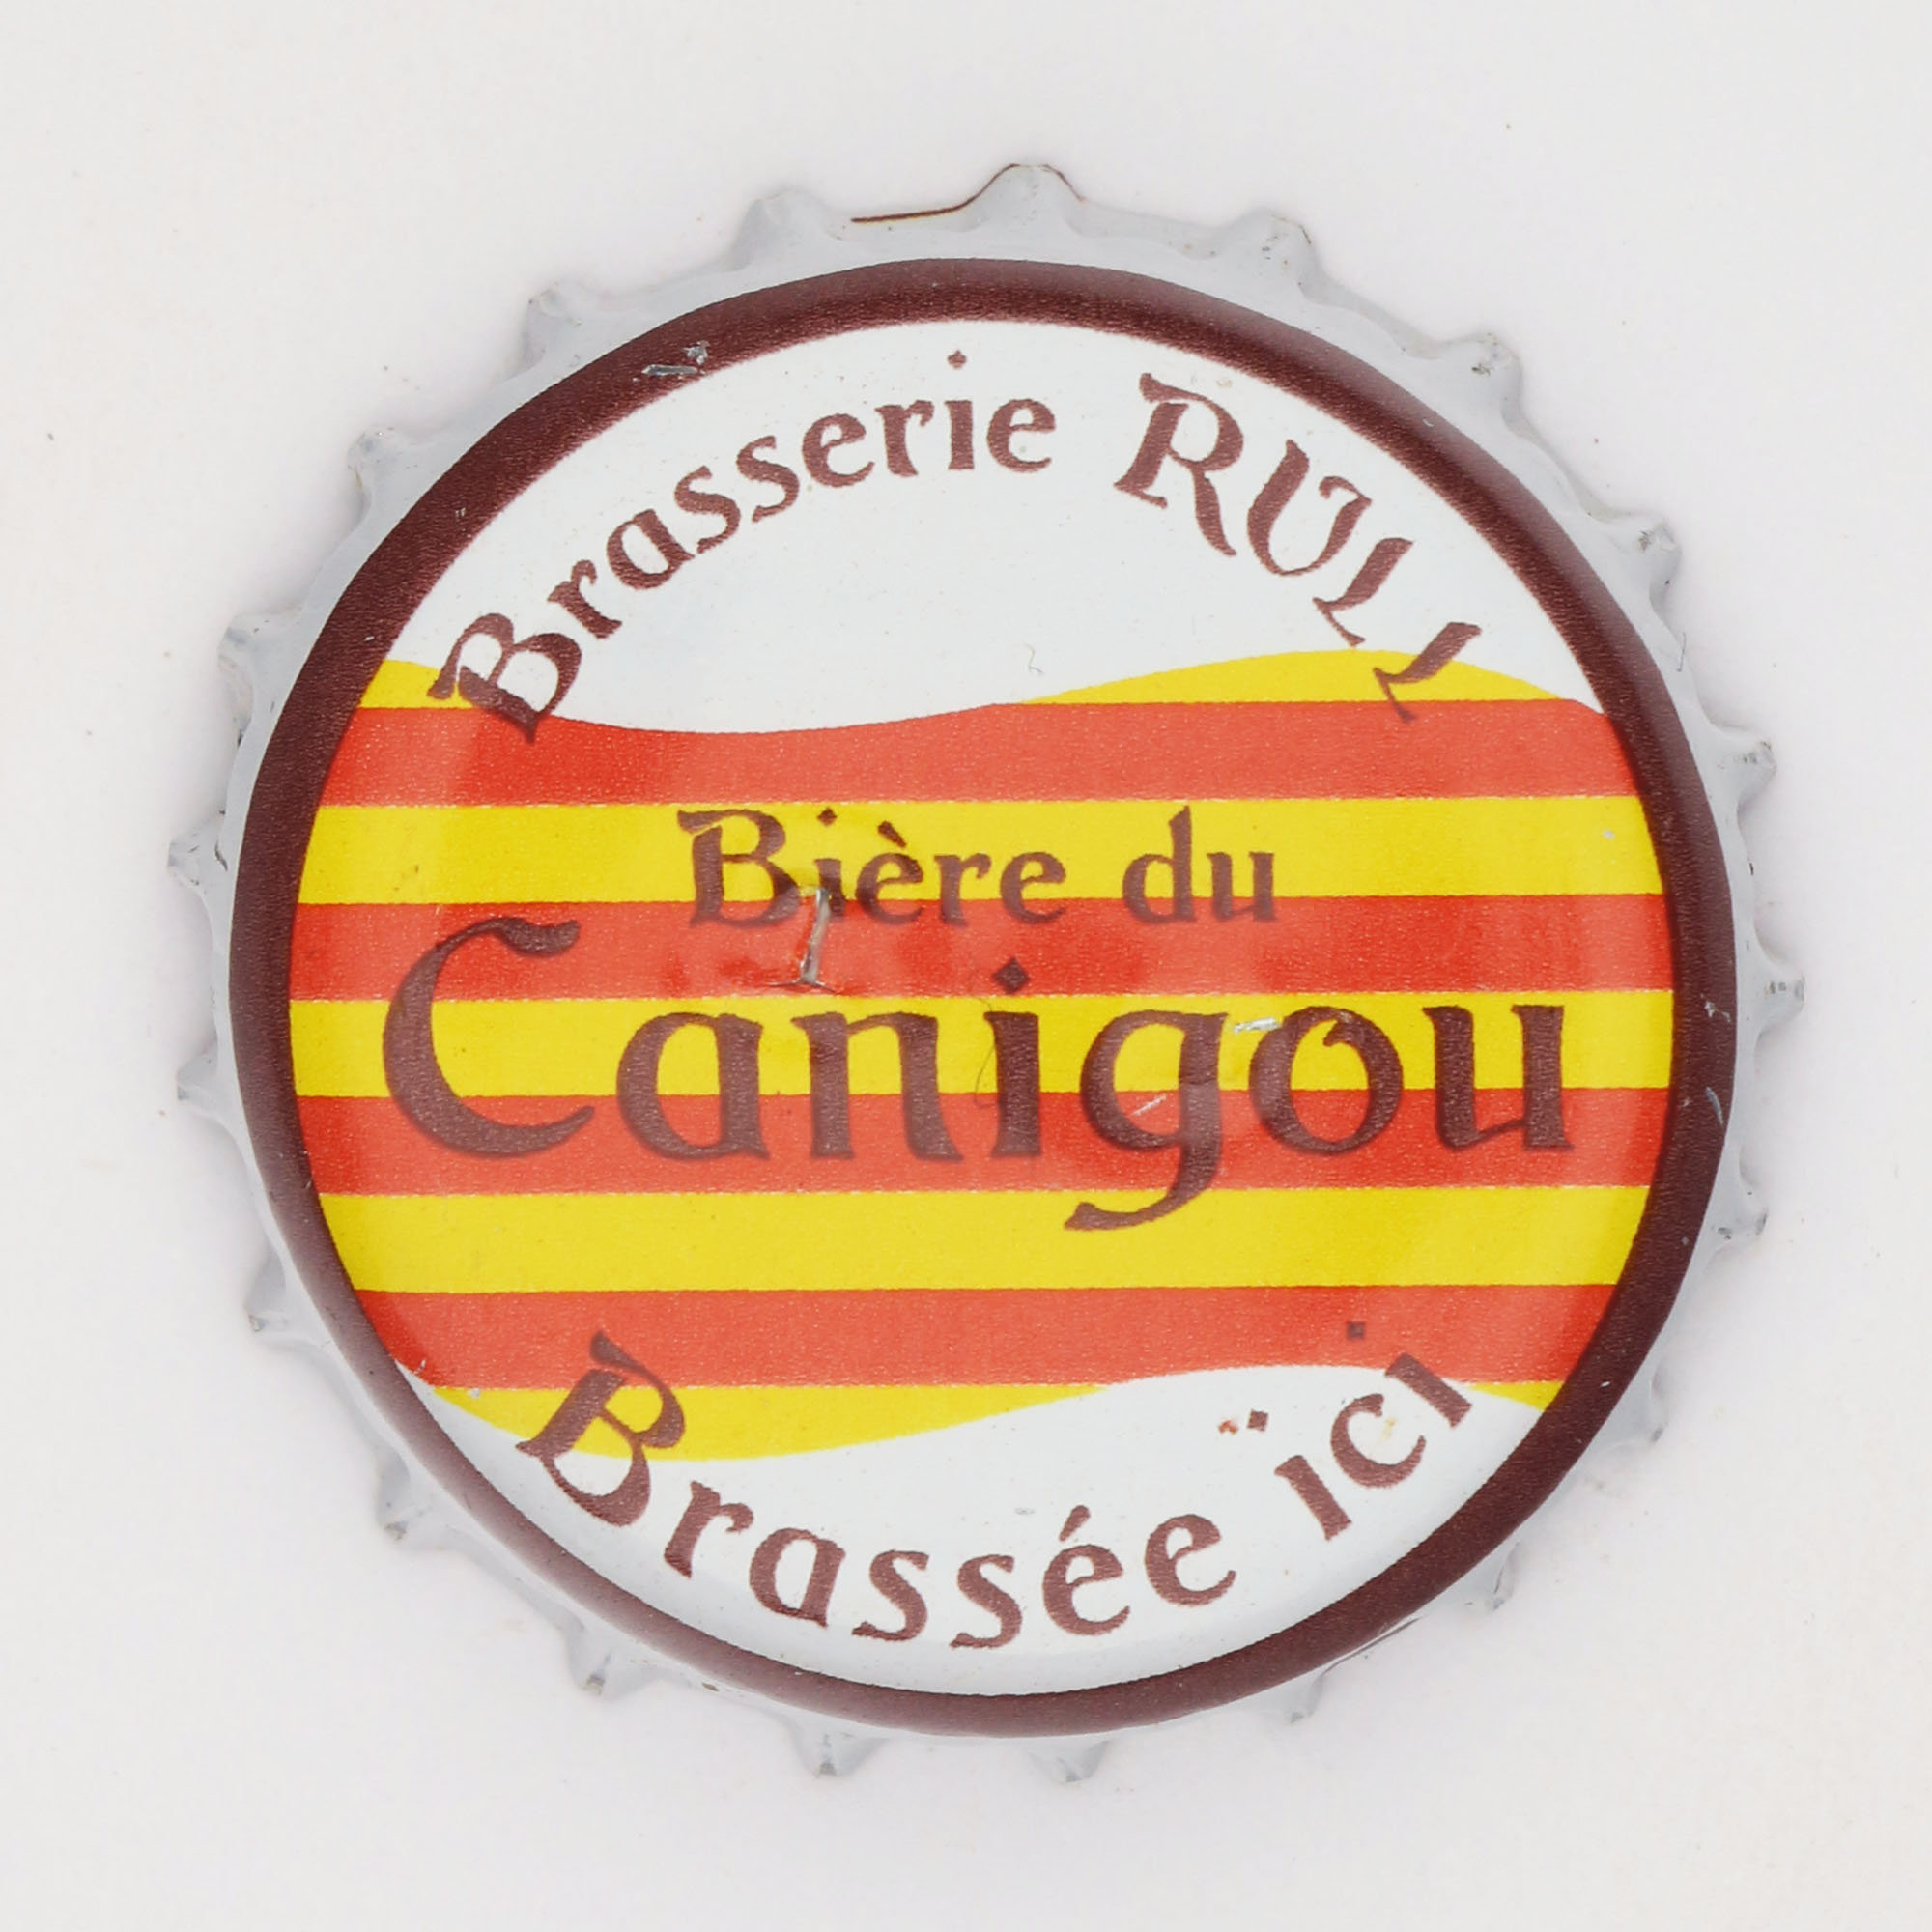 öl från Katalonien